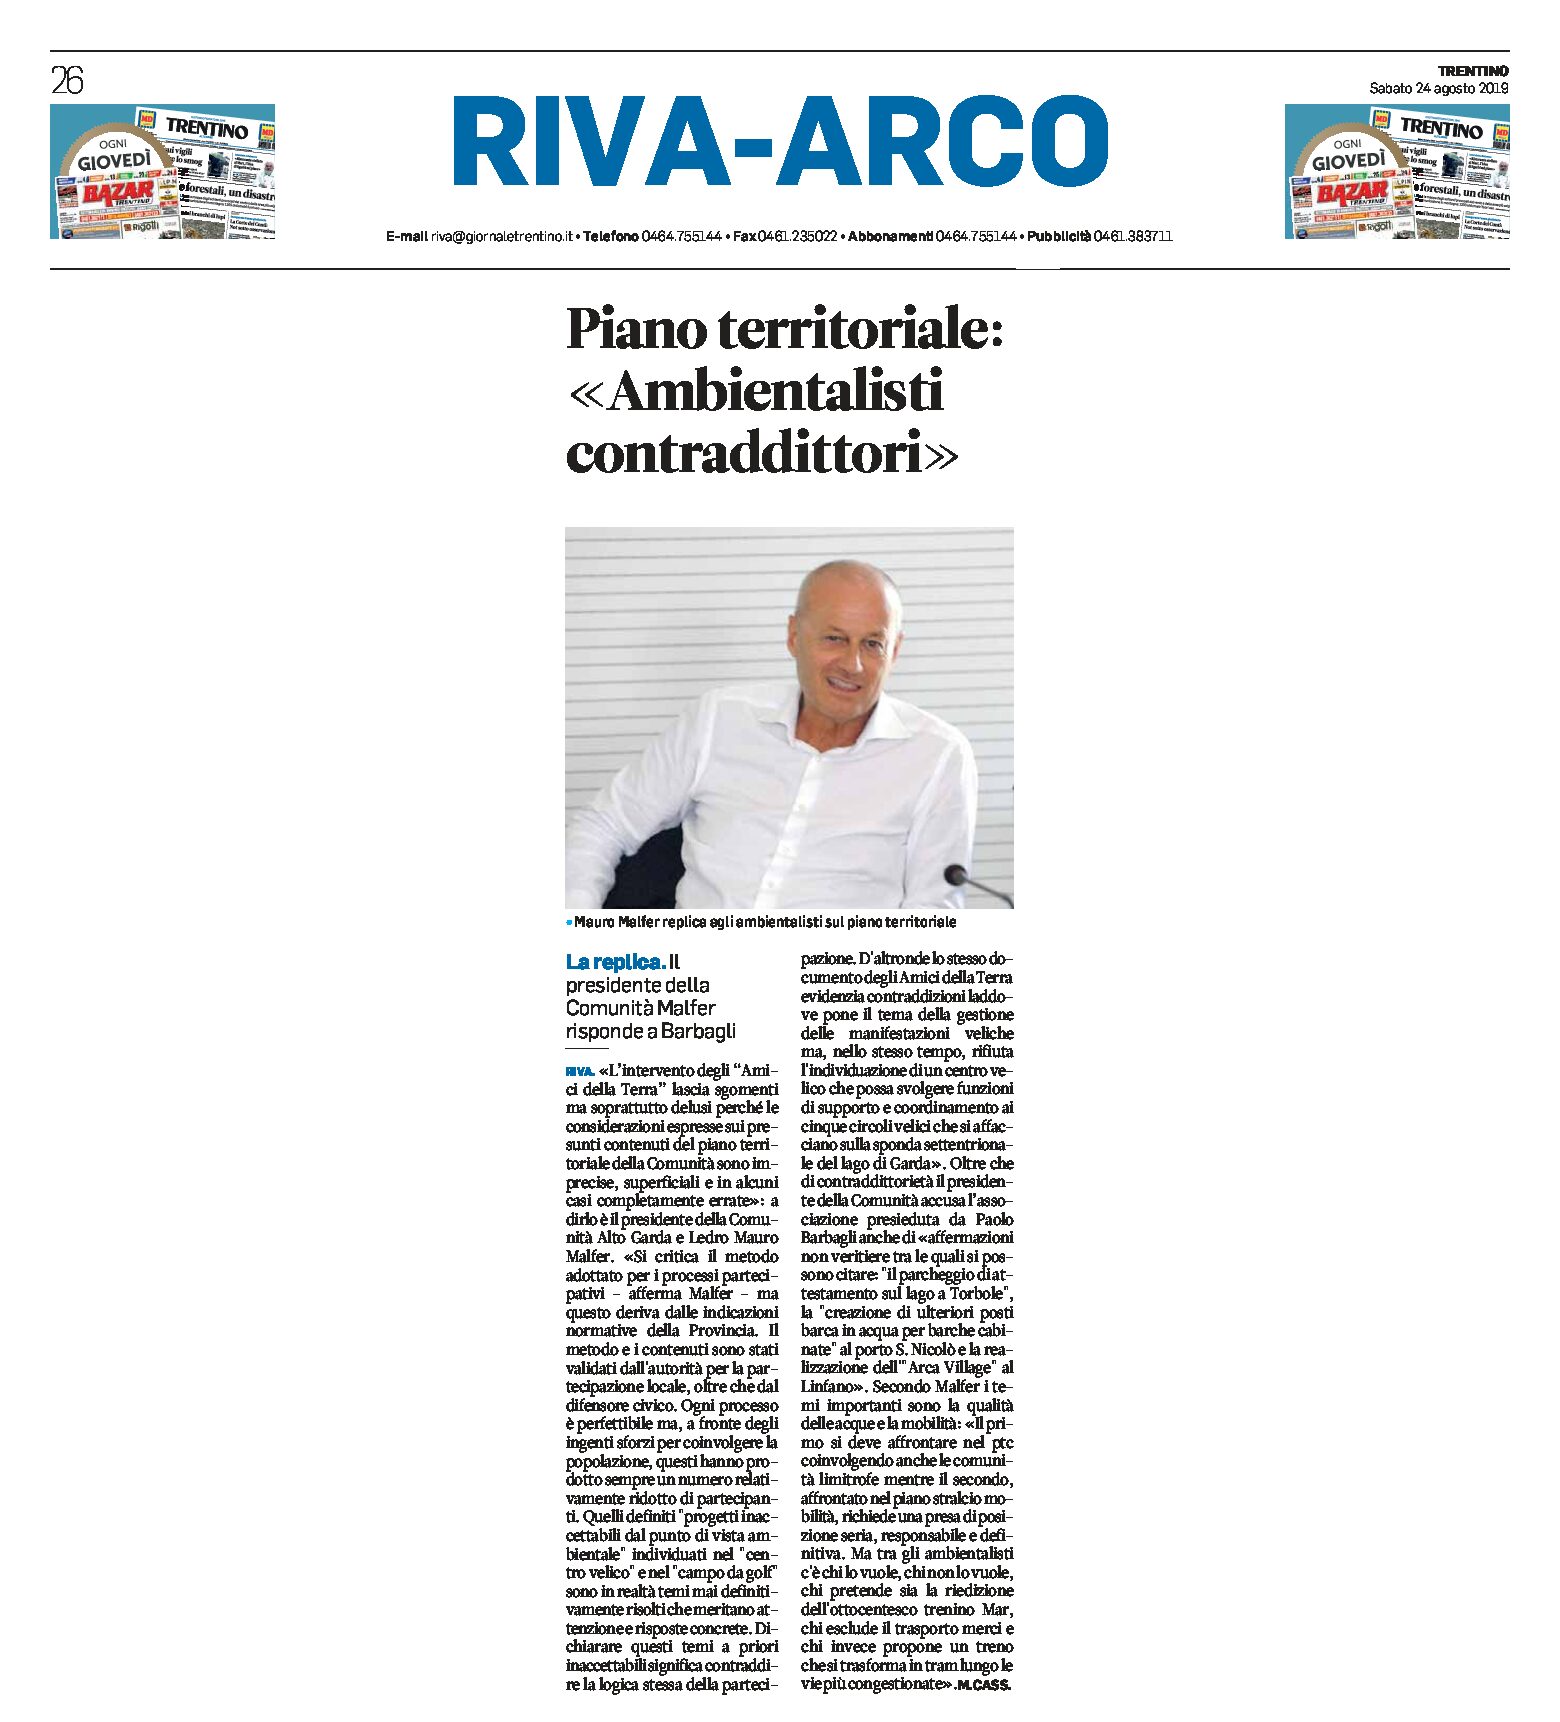 Riva: Piano territoriale, Malfer “ambientalisti contraddittori”